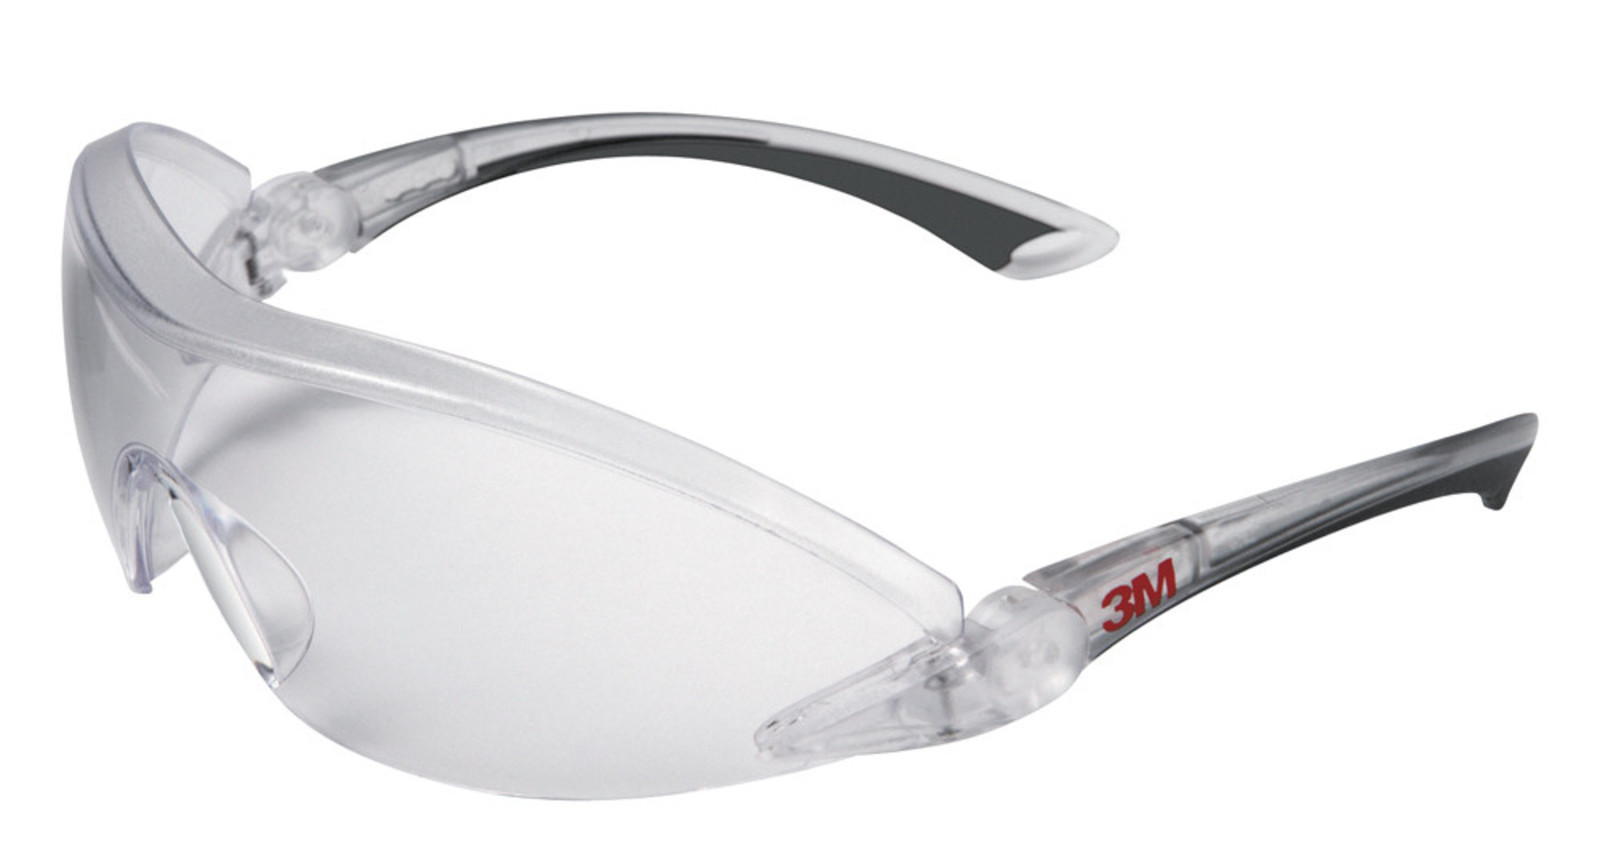 Ochranné okuliare 3M 284x - farba: číra